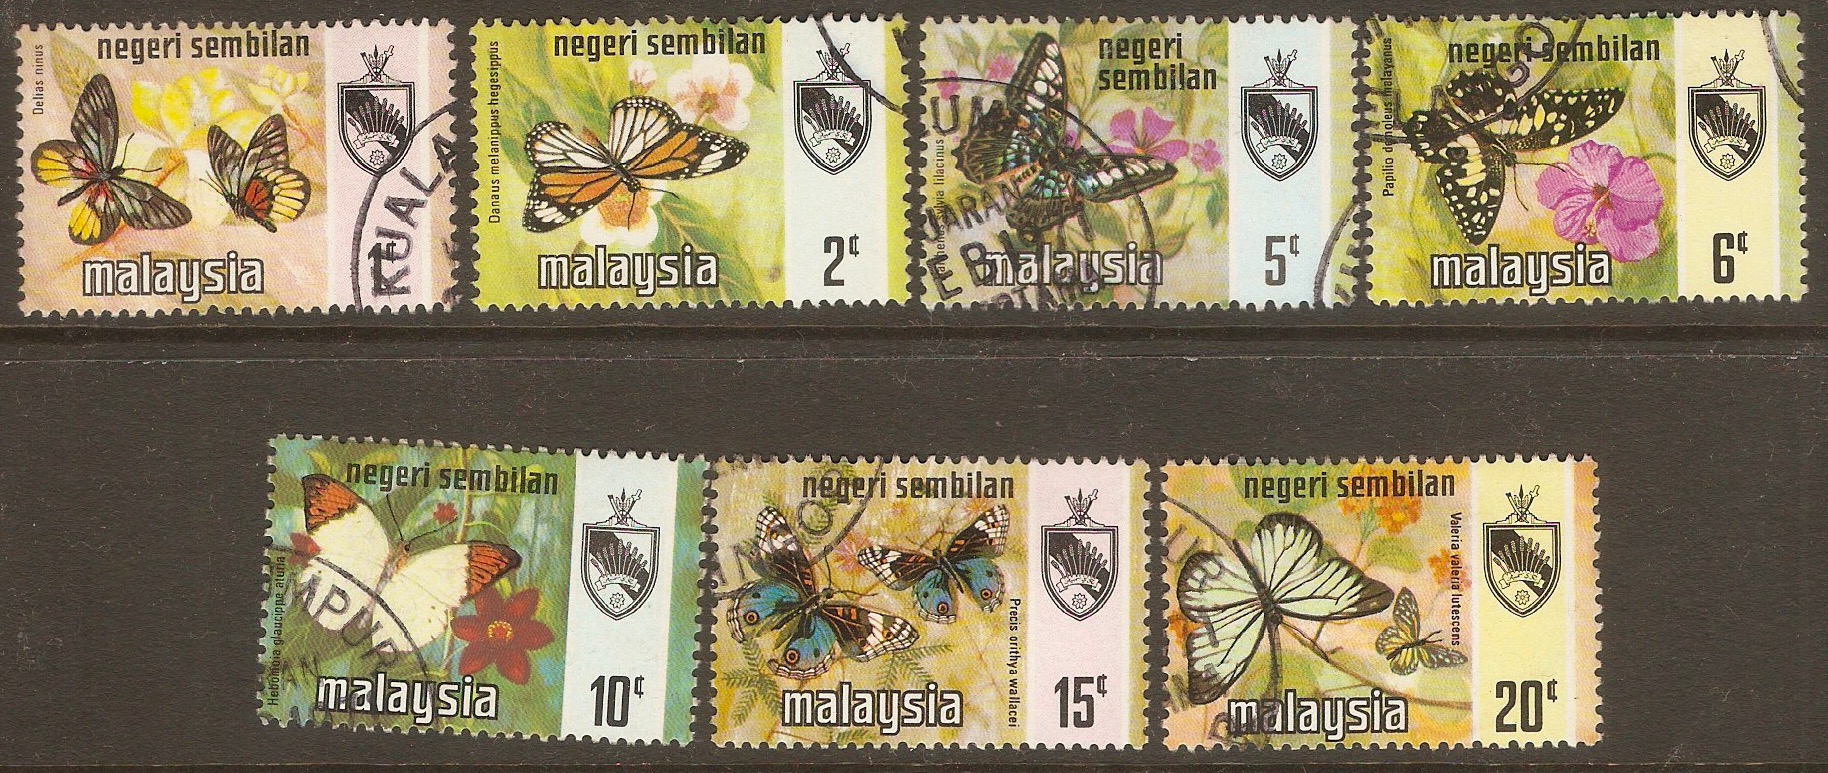 Negri Sembilan 1971 Butterflies set. SG91-SG97.